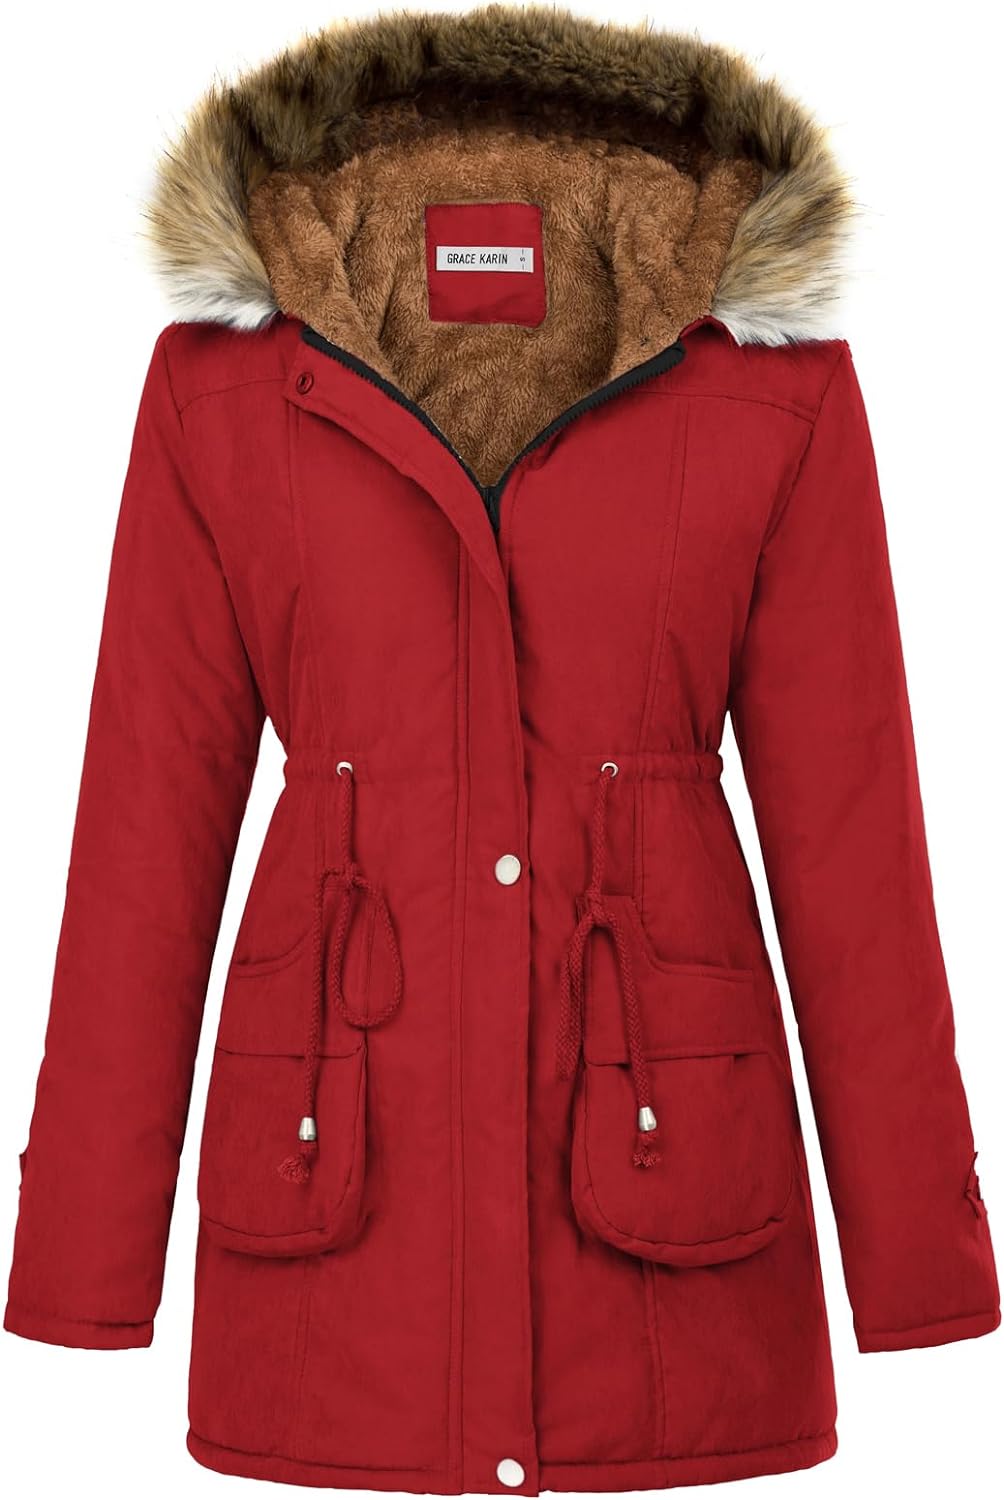 GRACE KARIN Women's Winter Coats Fleece Parkas Anoraks Hooded Military  Jacket Co